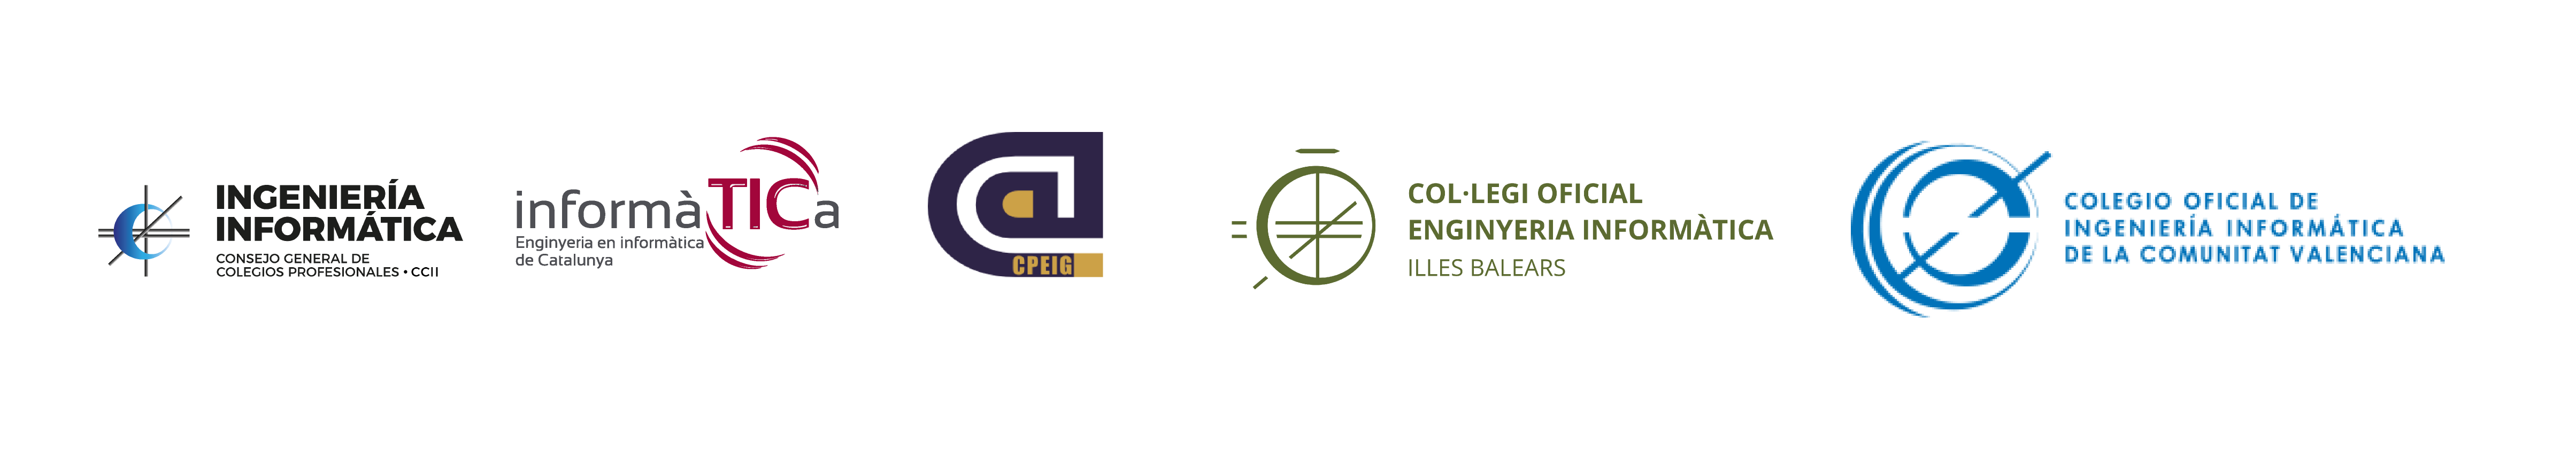 Logos-colegios-superiores-ingeniería-informática